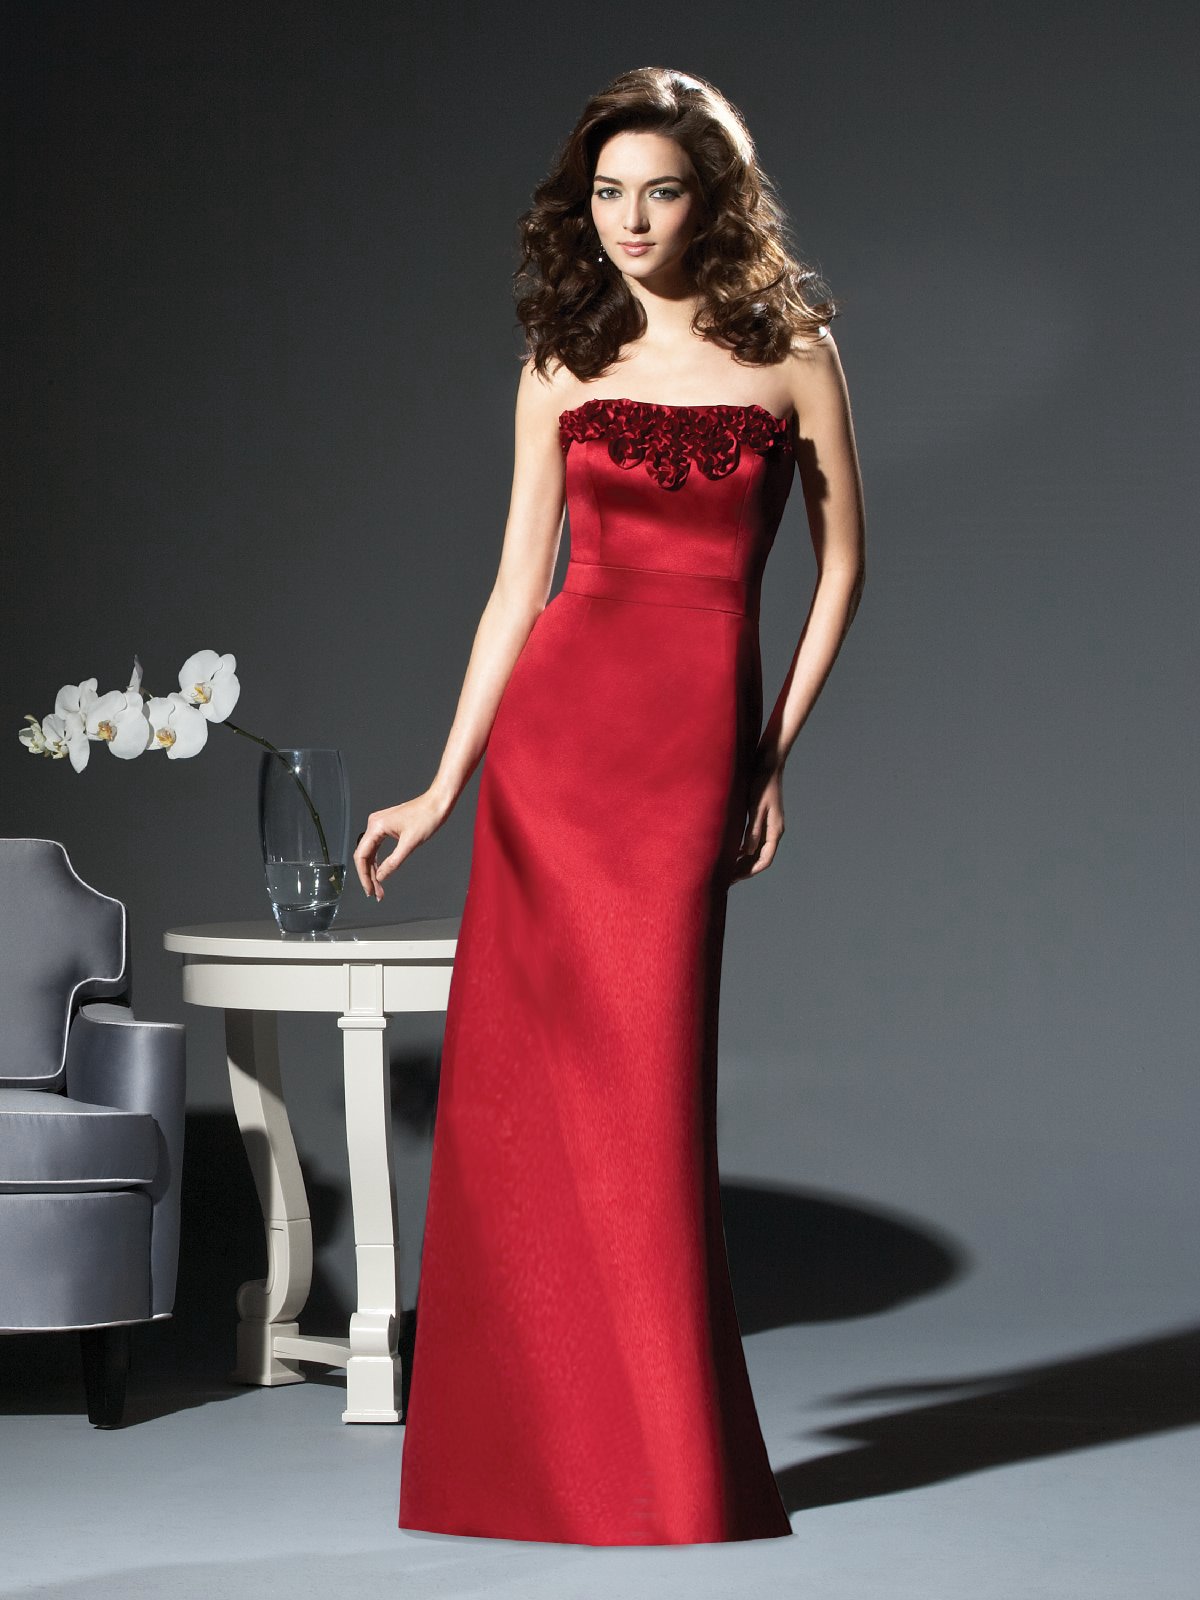 Elite Red Column Strapless Floor Length Satin Prom Dresses With Rosette 